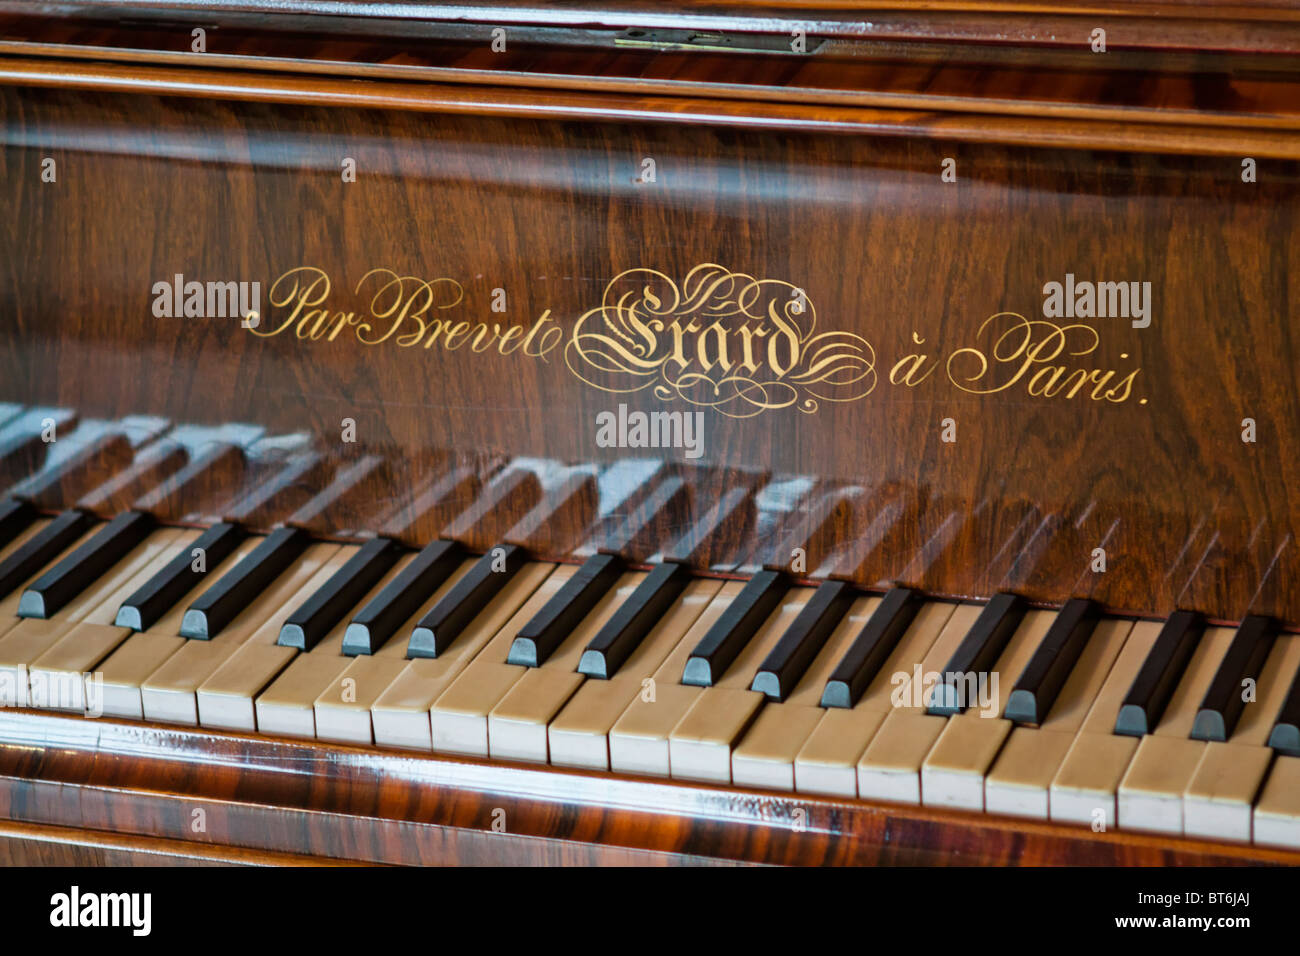 Erard piano, Amboise palace, France Stock Photo